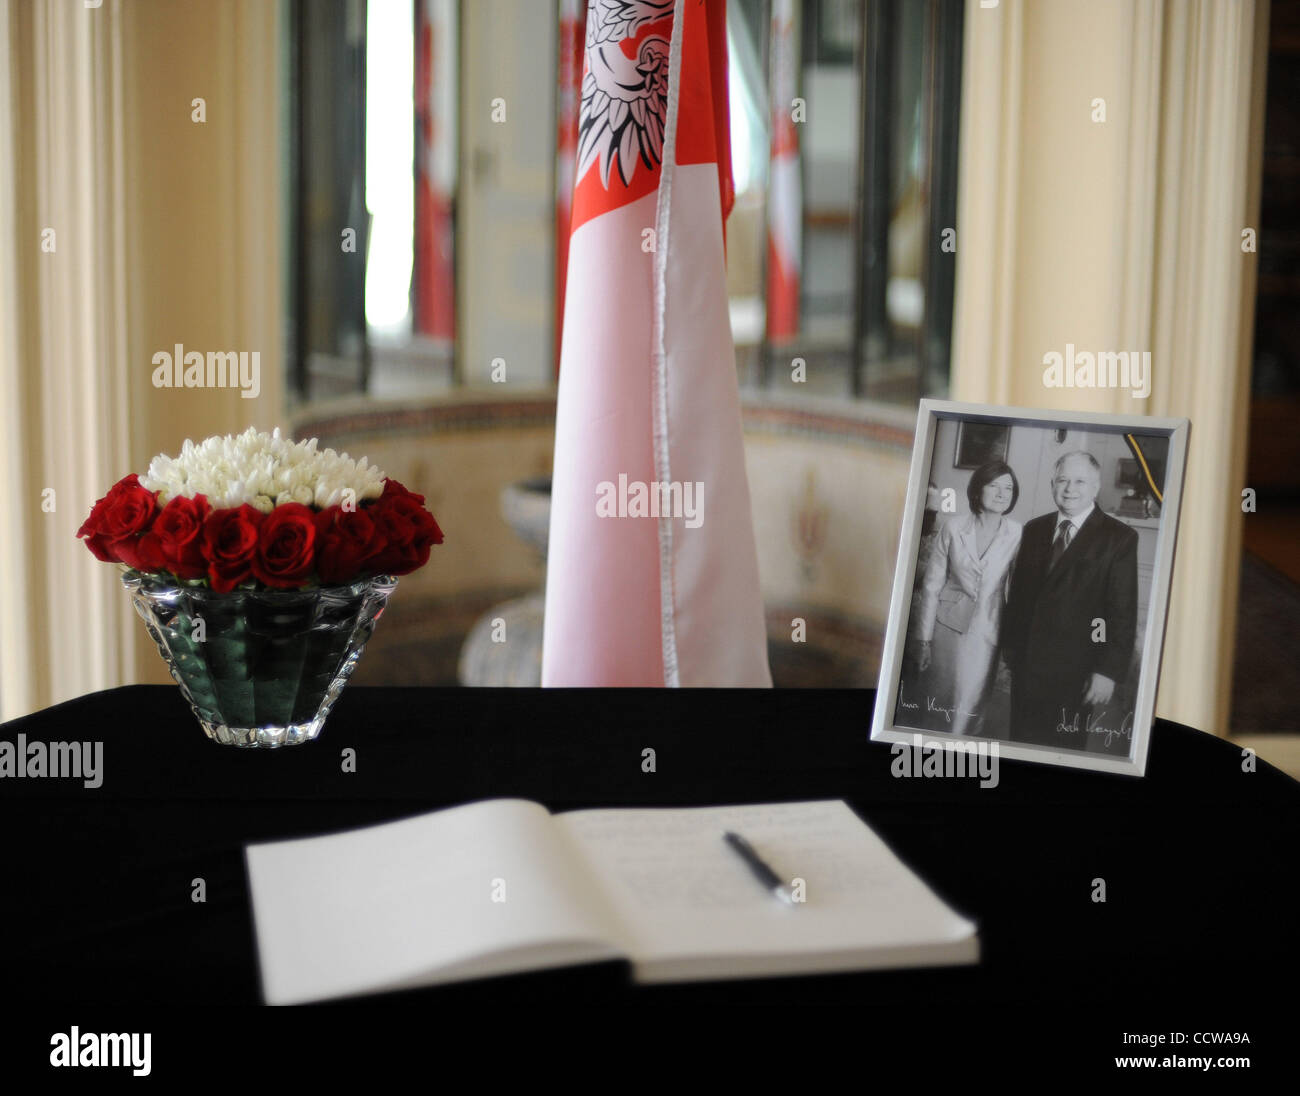 11 avril 2010 - Washington, D.C., USA - Visiteurs signer le livre de condoléances à l'ambassade de Pologne à Washington, D.C., pour rendre hommage au président polonais Lech Kaczynski qui a été tué au cours d'un plan d'un crash dans la Russie d'hier. Le chef polonais, sa femme et une partie de la plus haute milit Banque D'Images